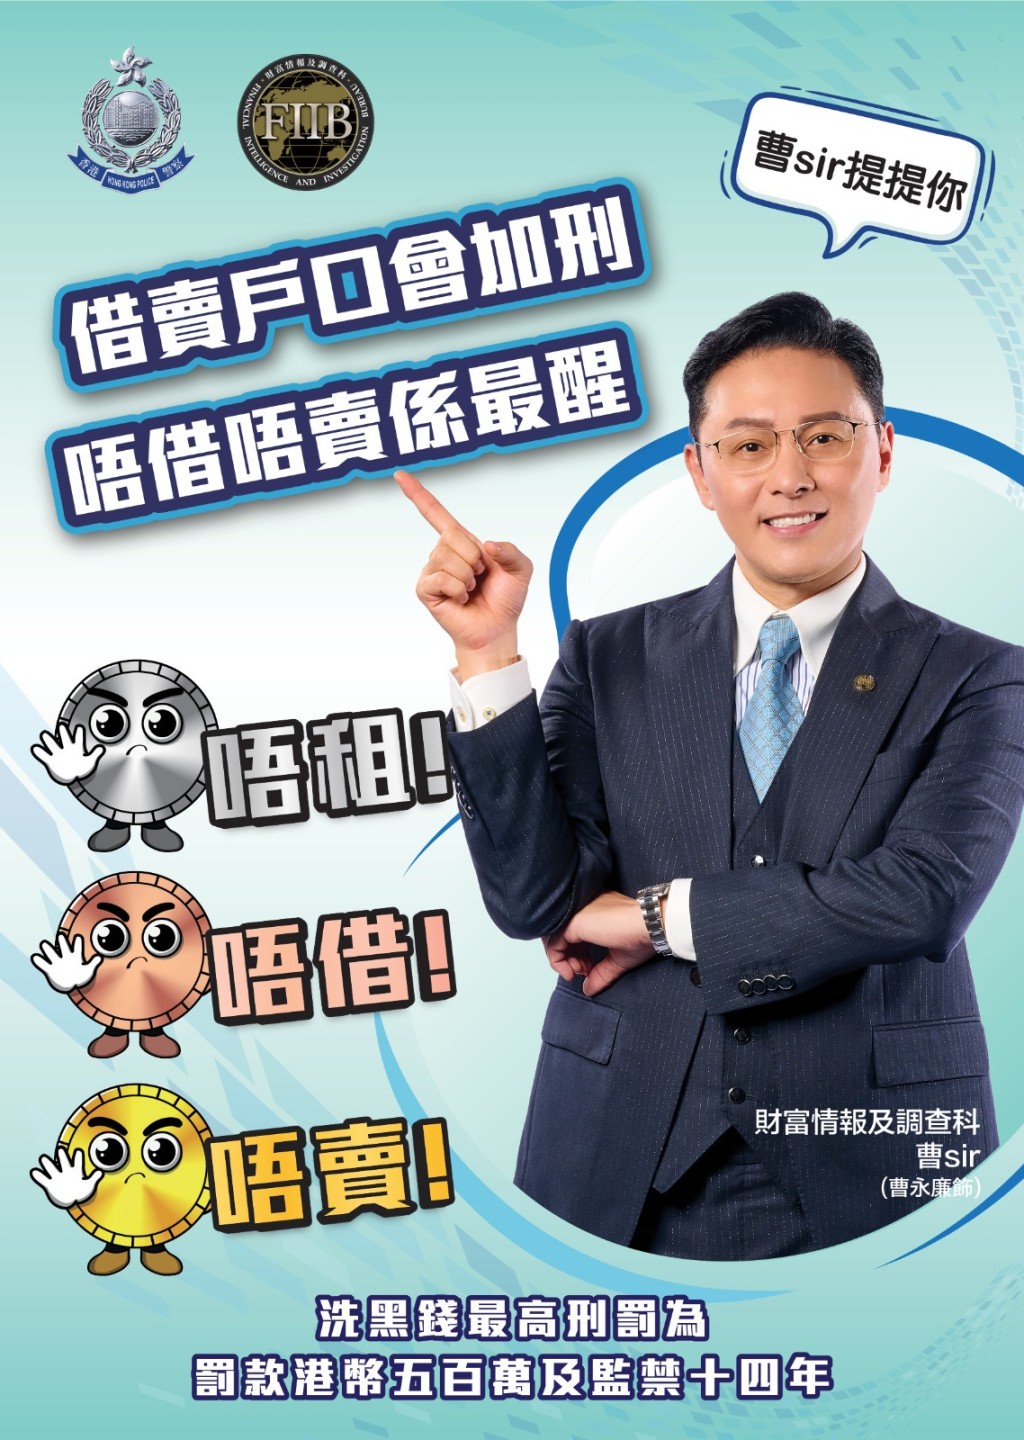 藝人曹永廉拍攝海報，提醒市民「唔租、唔借、唔賣」銀行戶口。